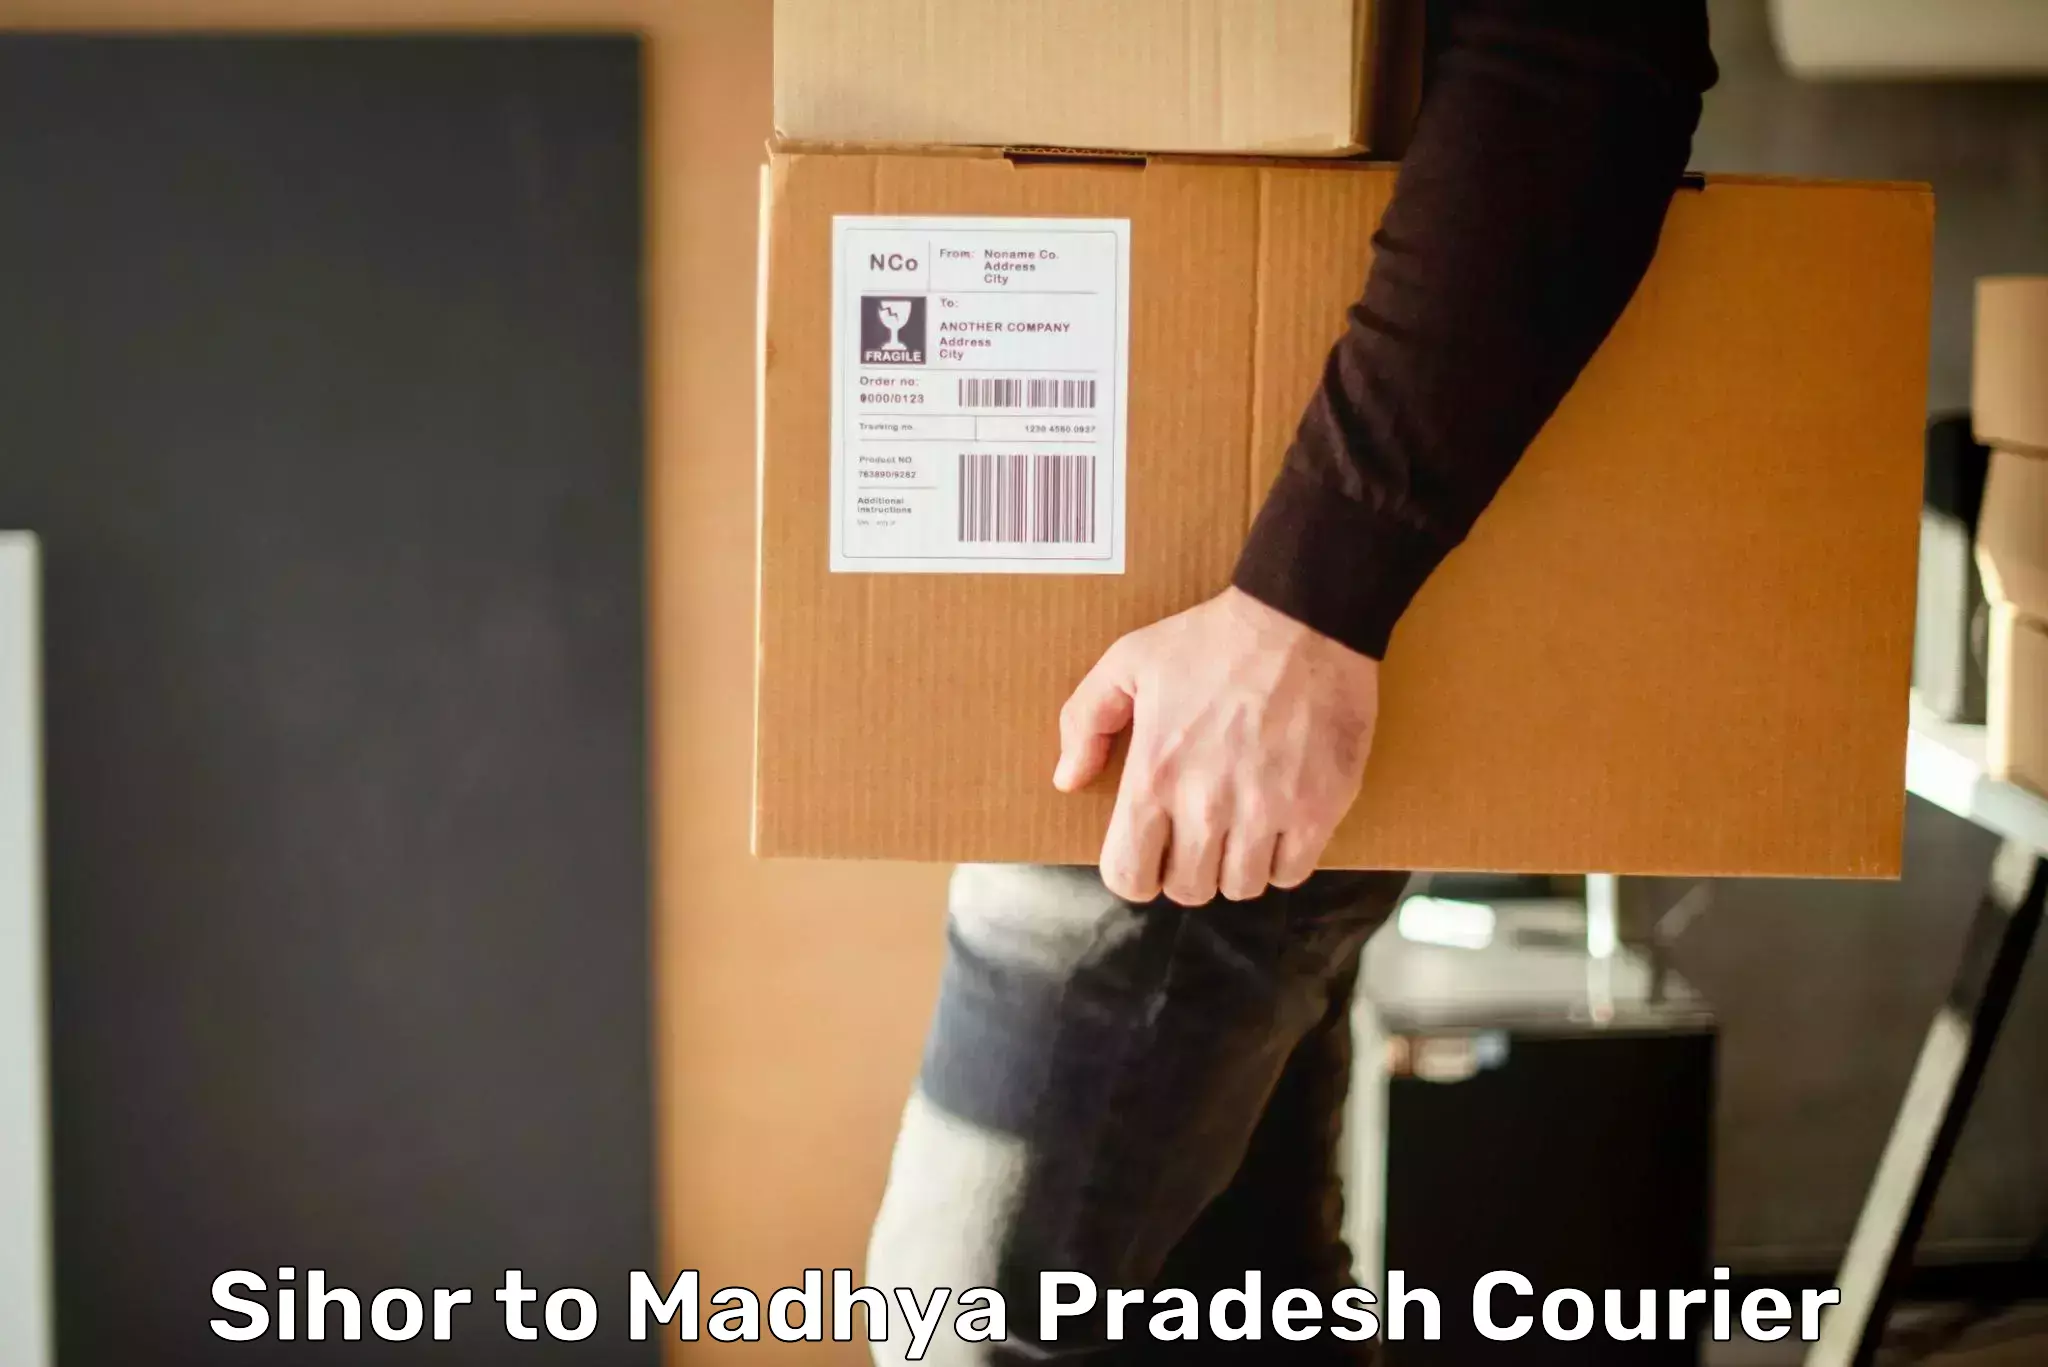 Express mail service Sihor to Madhya Pradesh